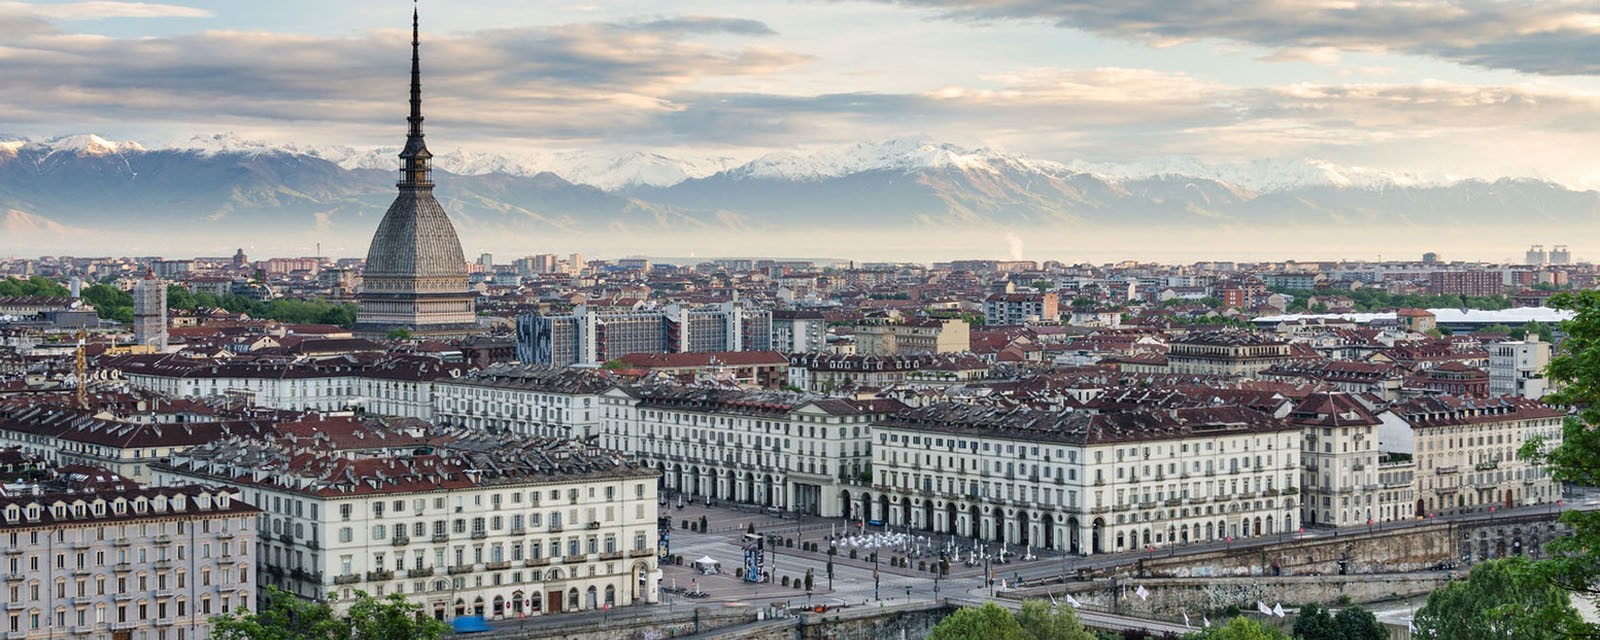 I migliori immobili di Torino